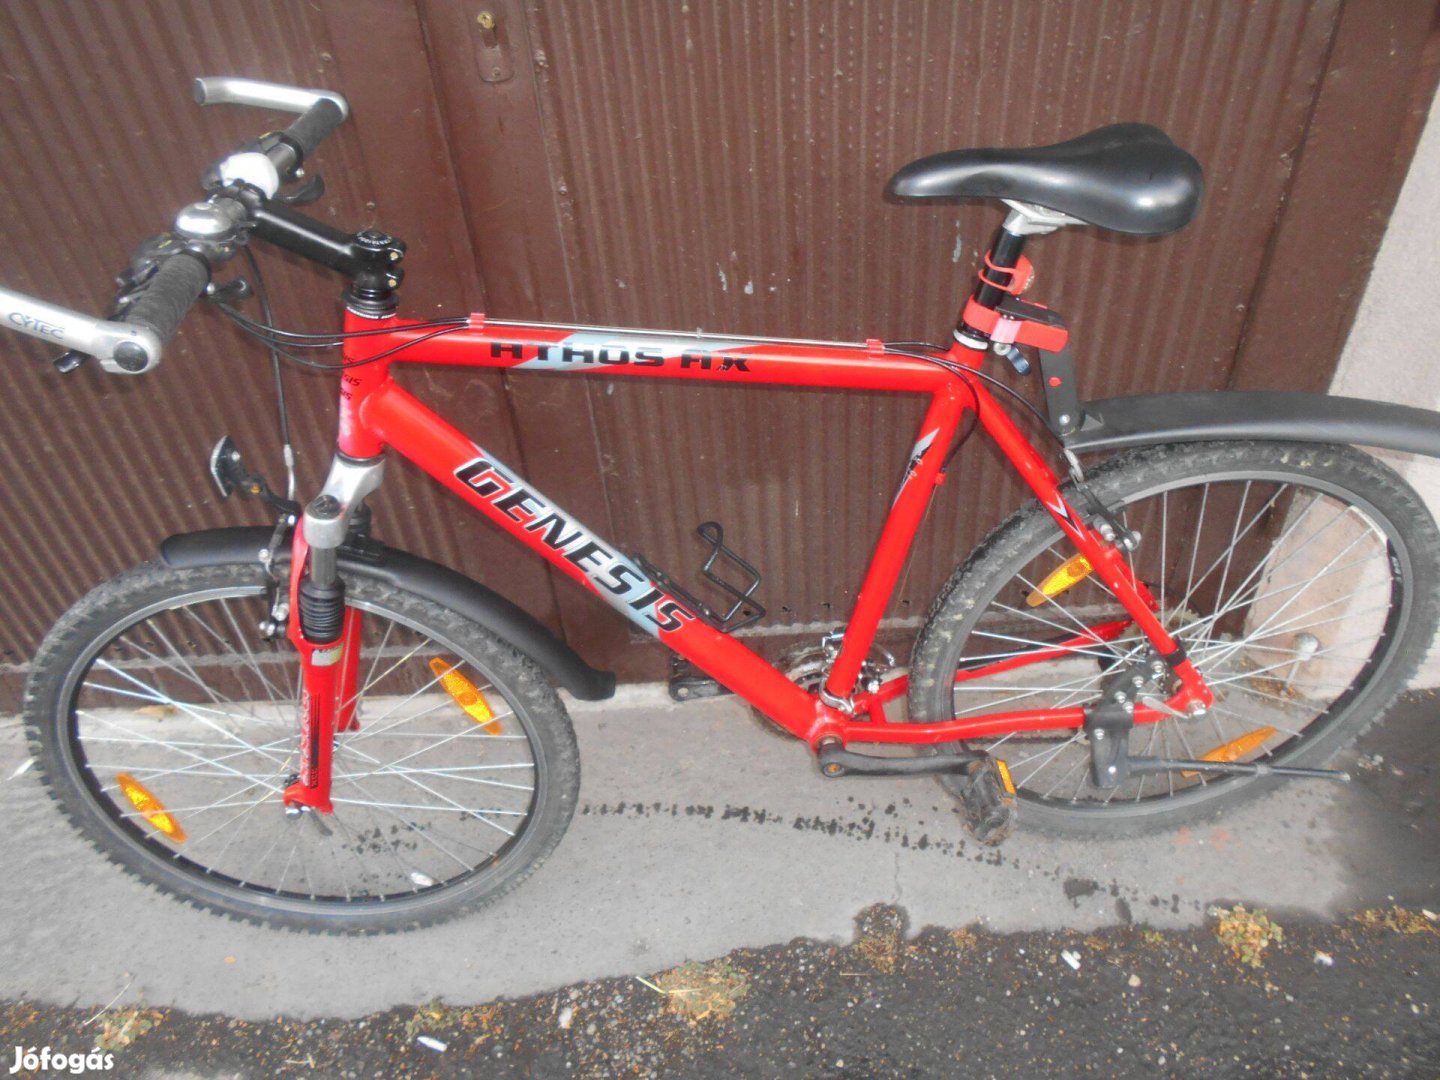 Genesis 26"-os mountaun bike